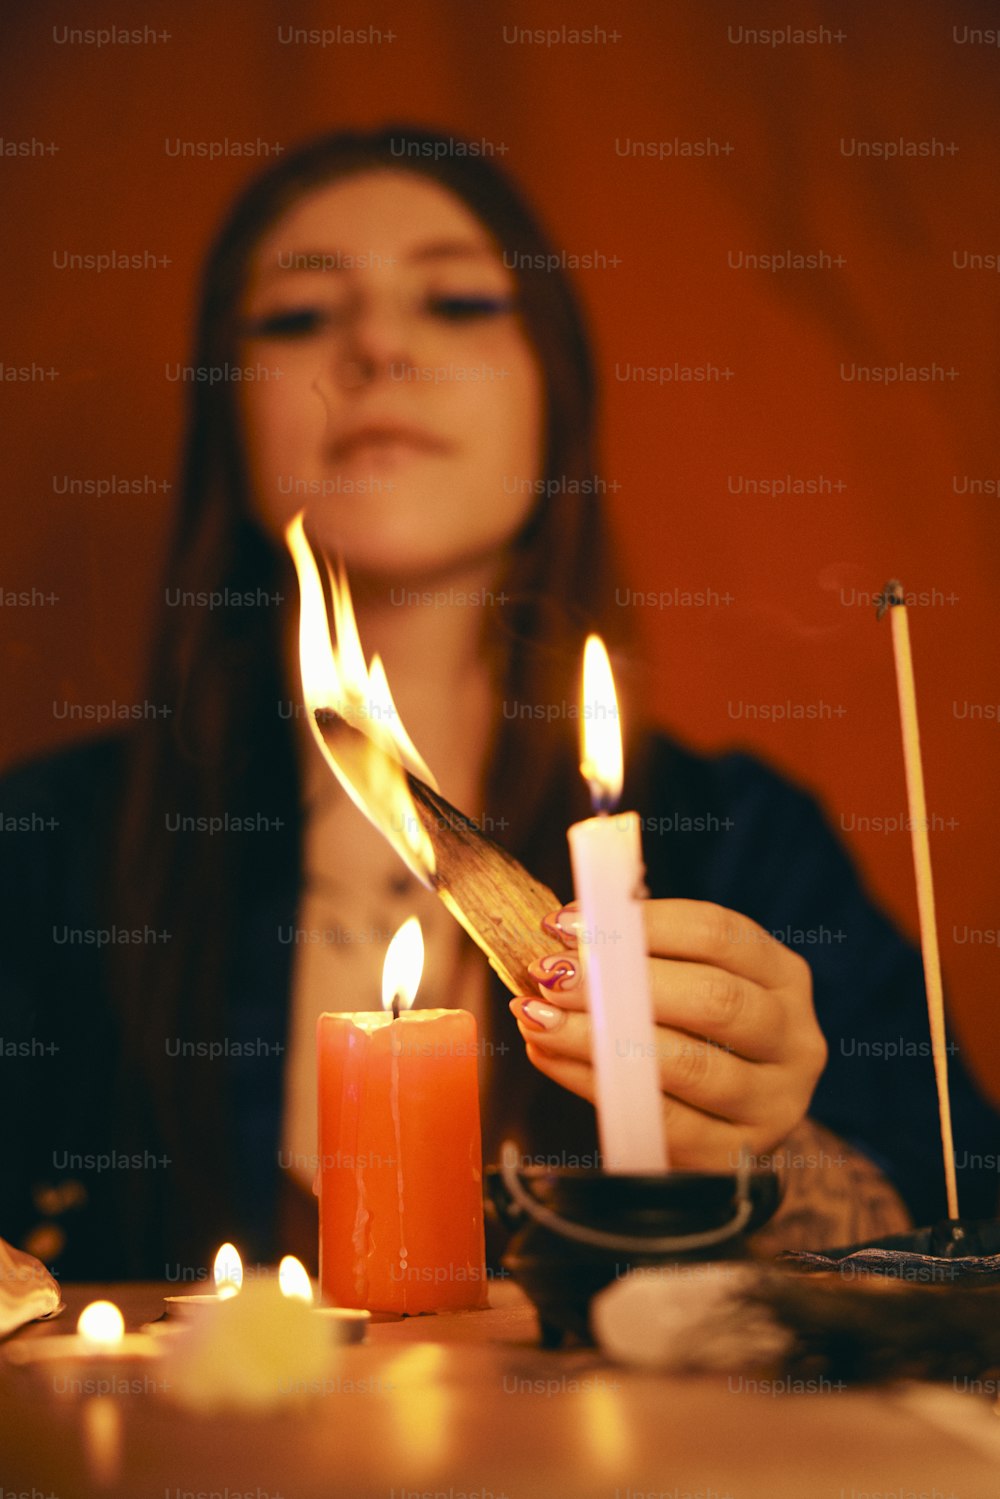 탁자 위에 촛불을 켜는 여자